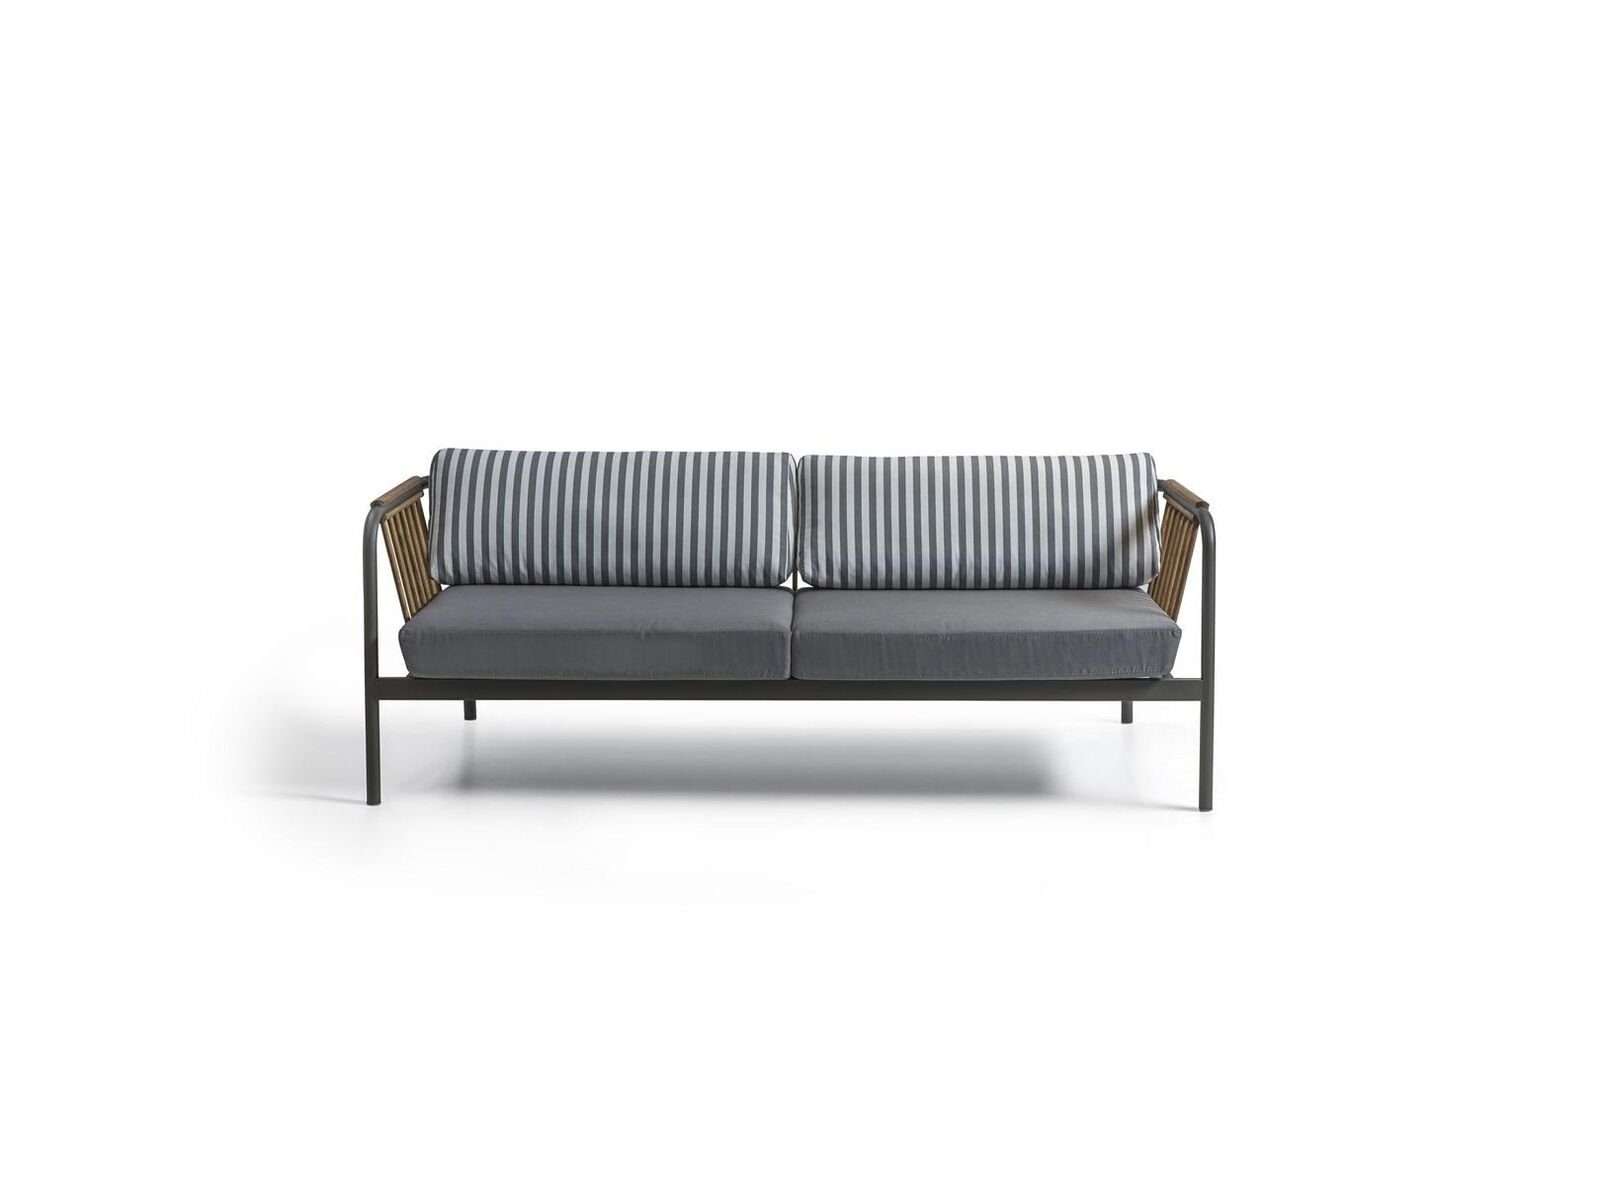 JVmoebel Sofa Luxus Sofa Design Polstermöbel, Möbel Made Moderne Polster Couch Dreisitzer in Europa